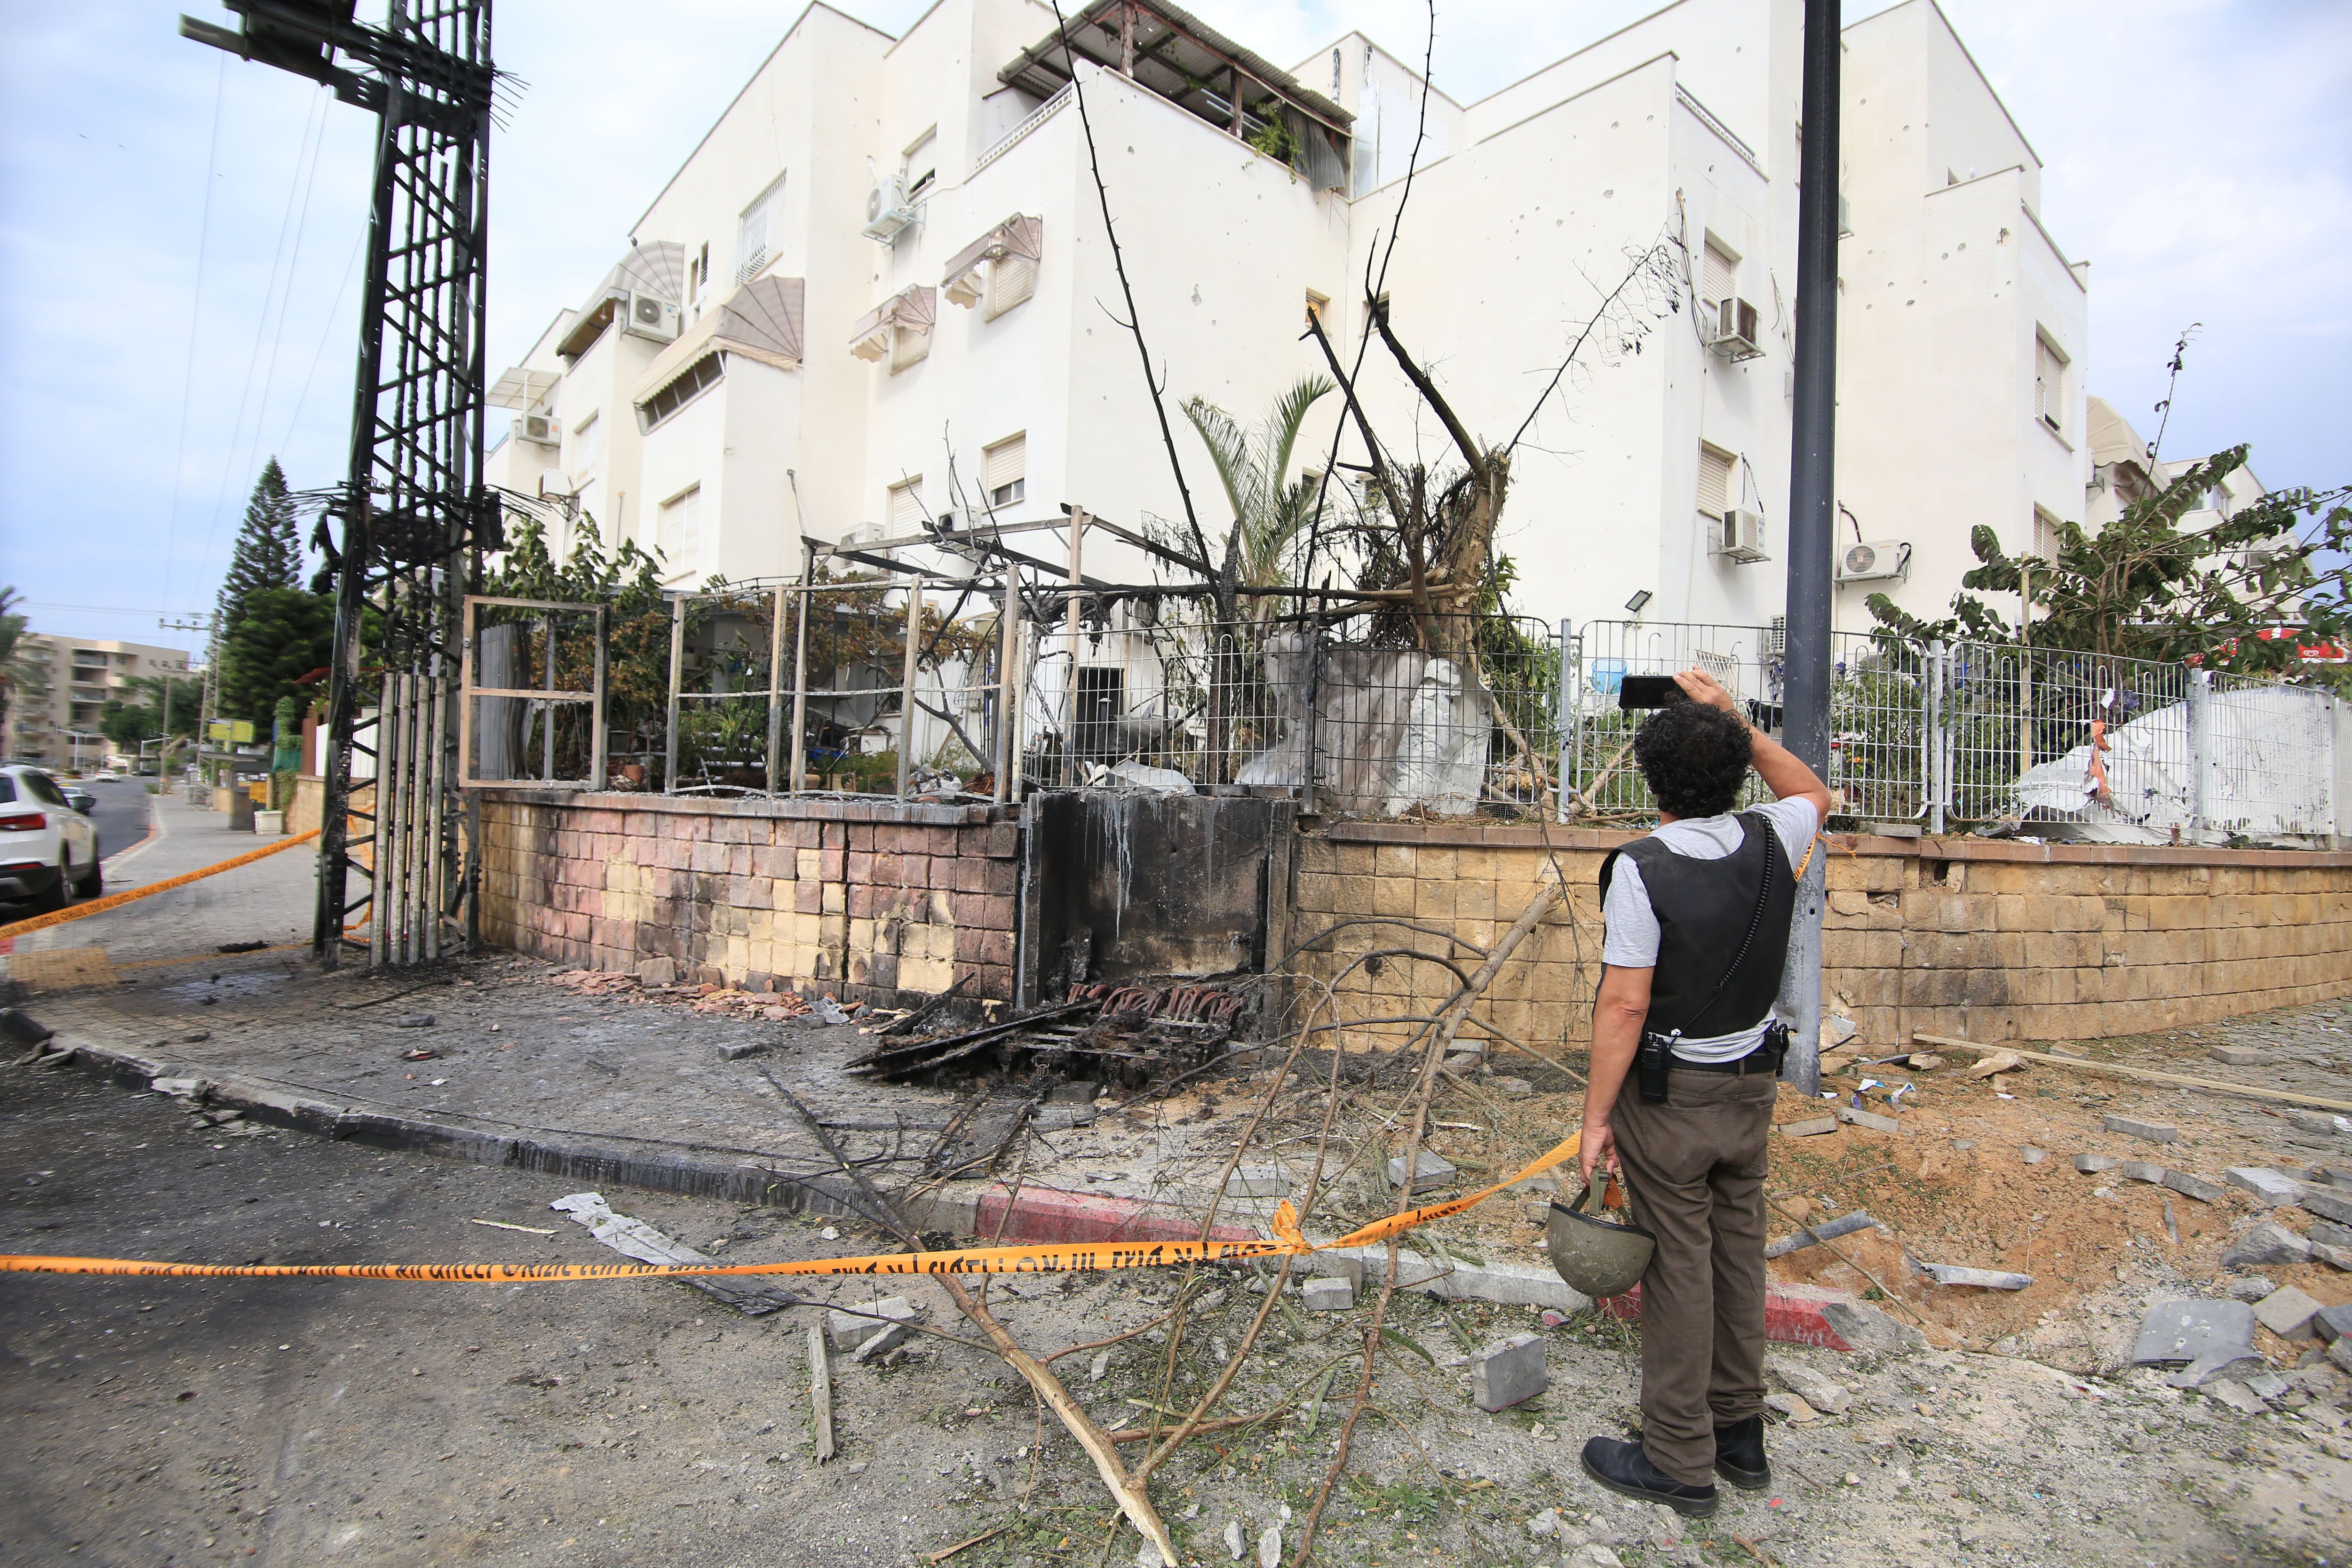 Daños materiales en la ciudad de Ascalón, en el sur de Israel, tras un ataque con proyectiles desde la Franja de Gaza. Europa Press/Contacto/saeedqaq
